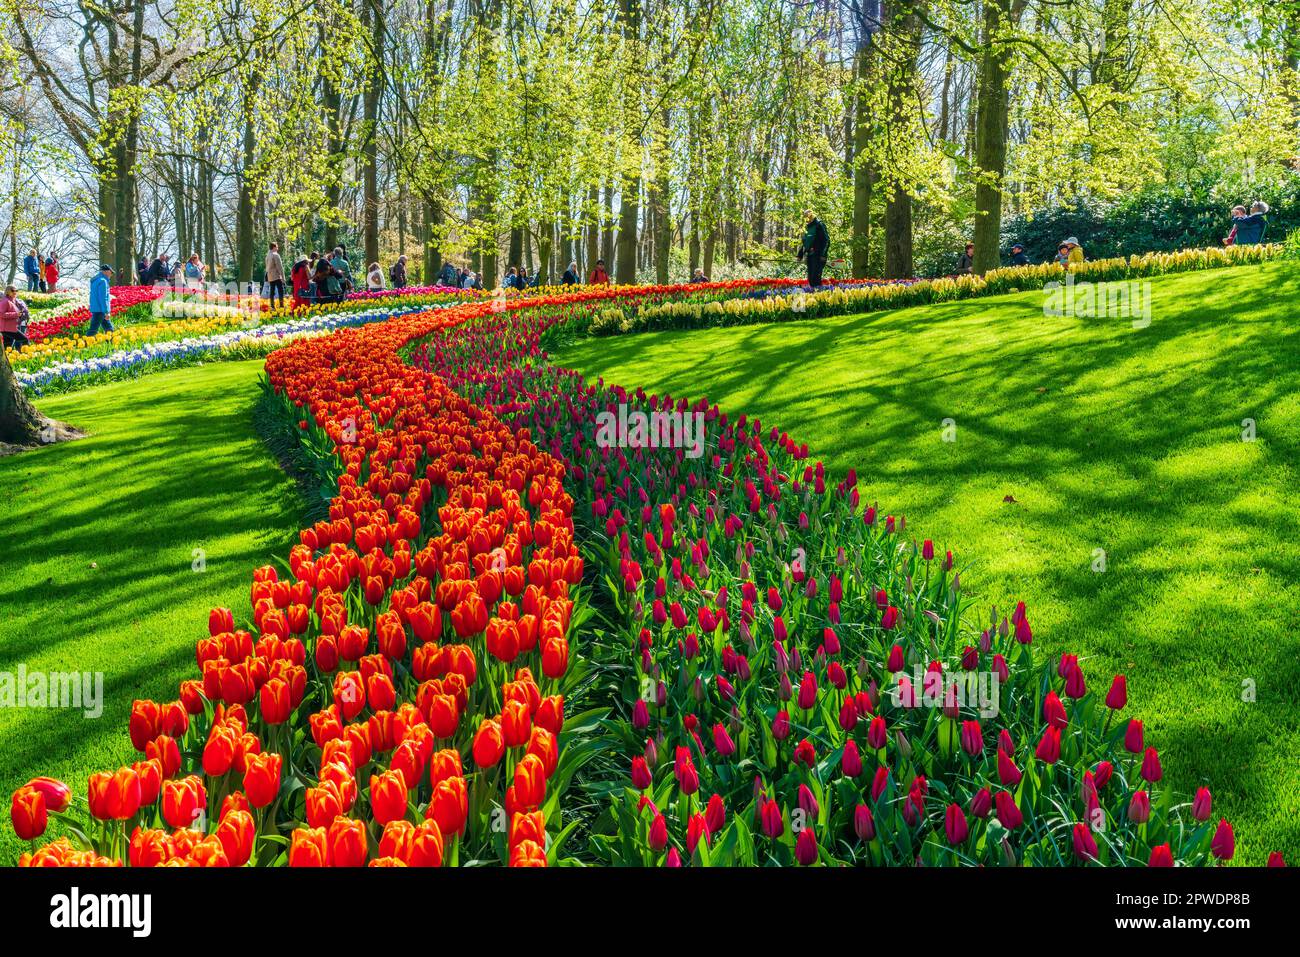 LISSE, HOLLANDE - 19 AVRIL 2023 : les visiteurs apprécient les tulipes en fleurs dans le parc de Keukenhof, l'un des plus grands jardins fleuris du monde Banque D'Images